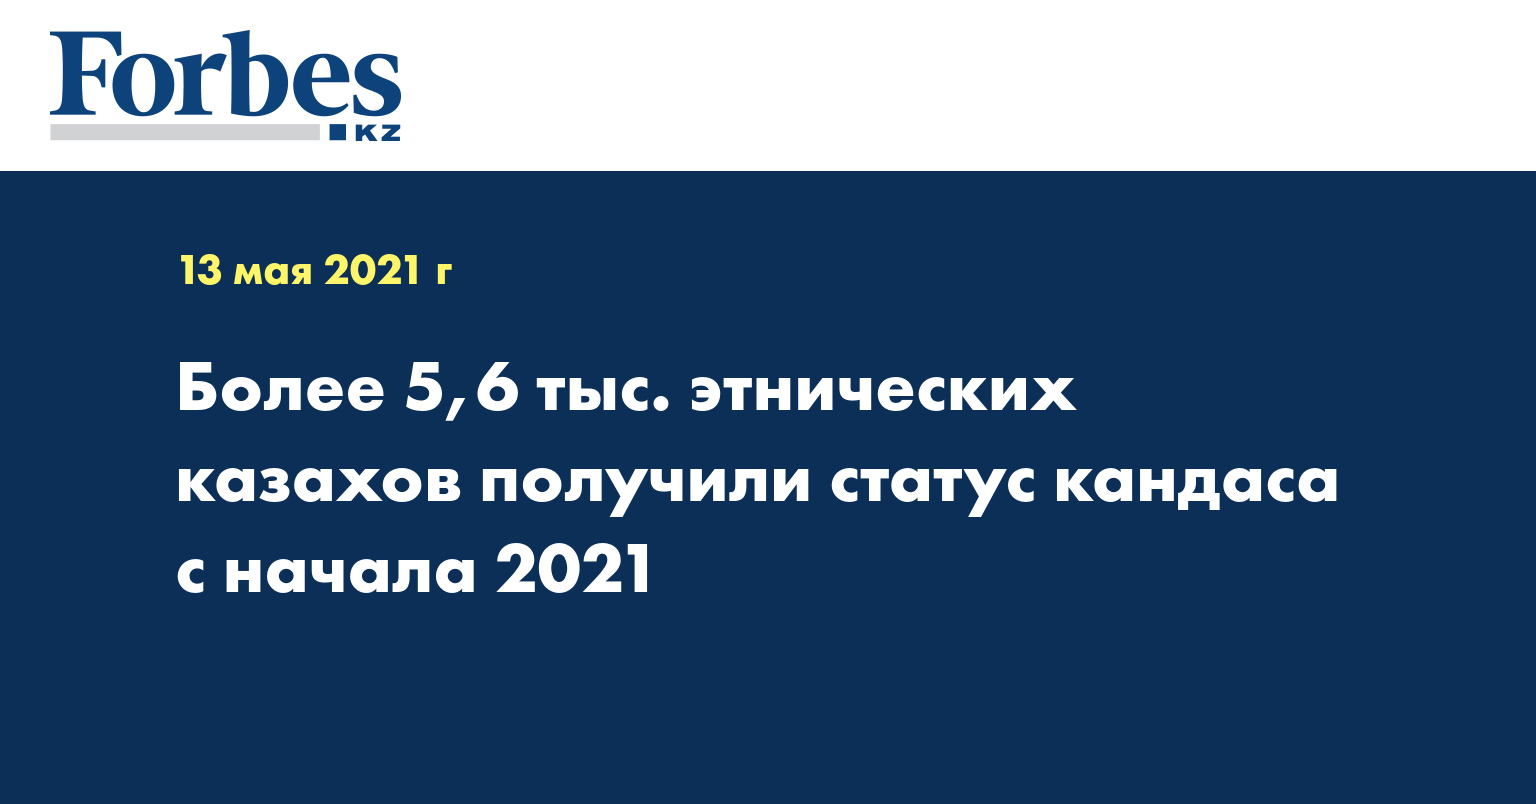 Более 5,6 тыс. этнических казахов получили статус кандаса с начала 2021